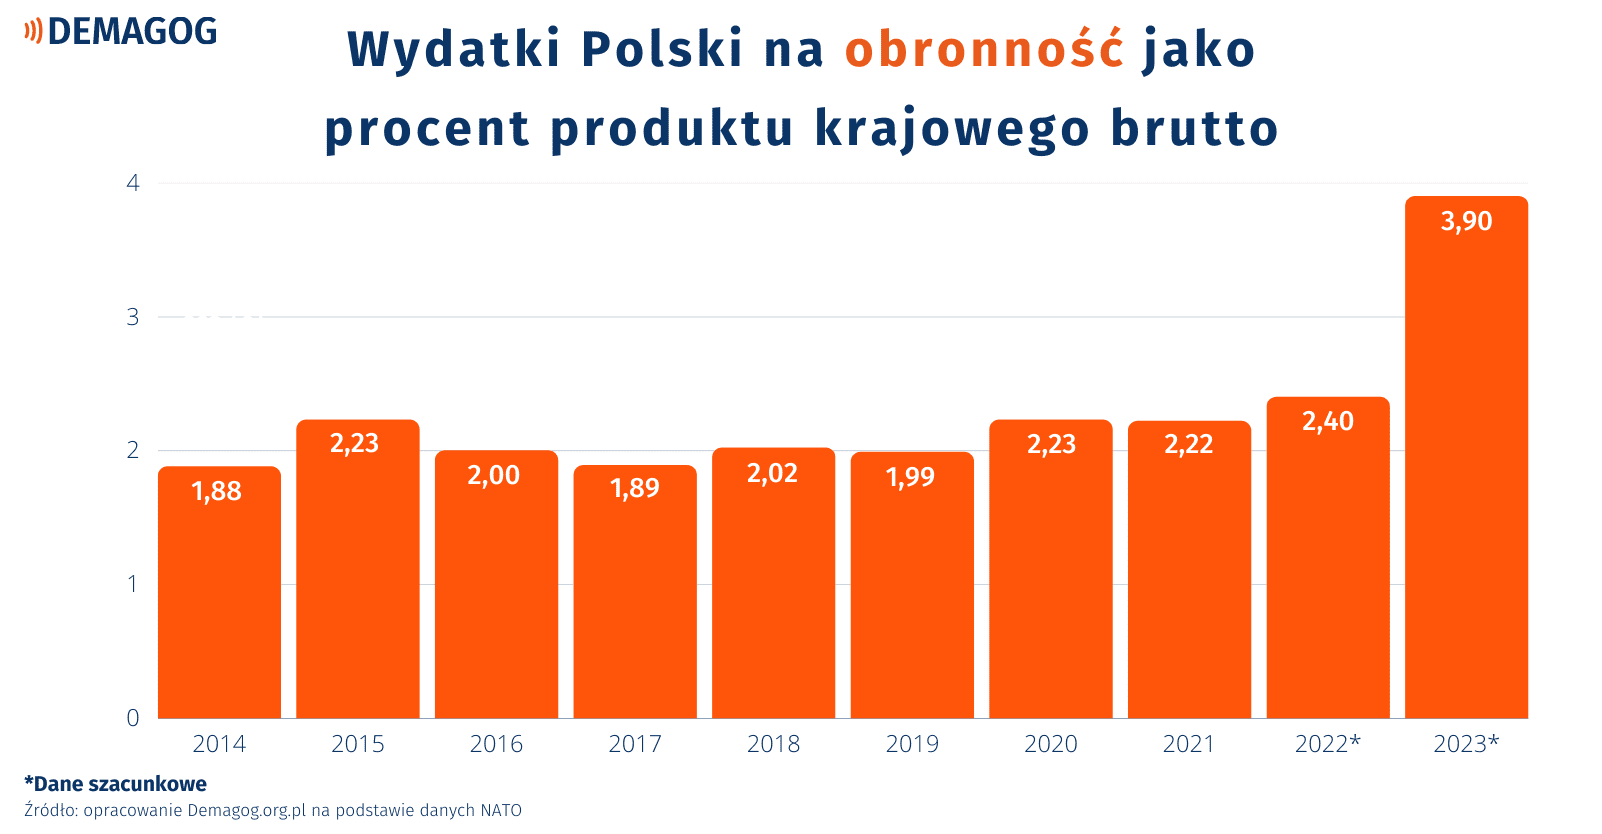 Wykres przedstawiający wydatki na obronność Polski w stosunku do PKB